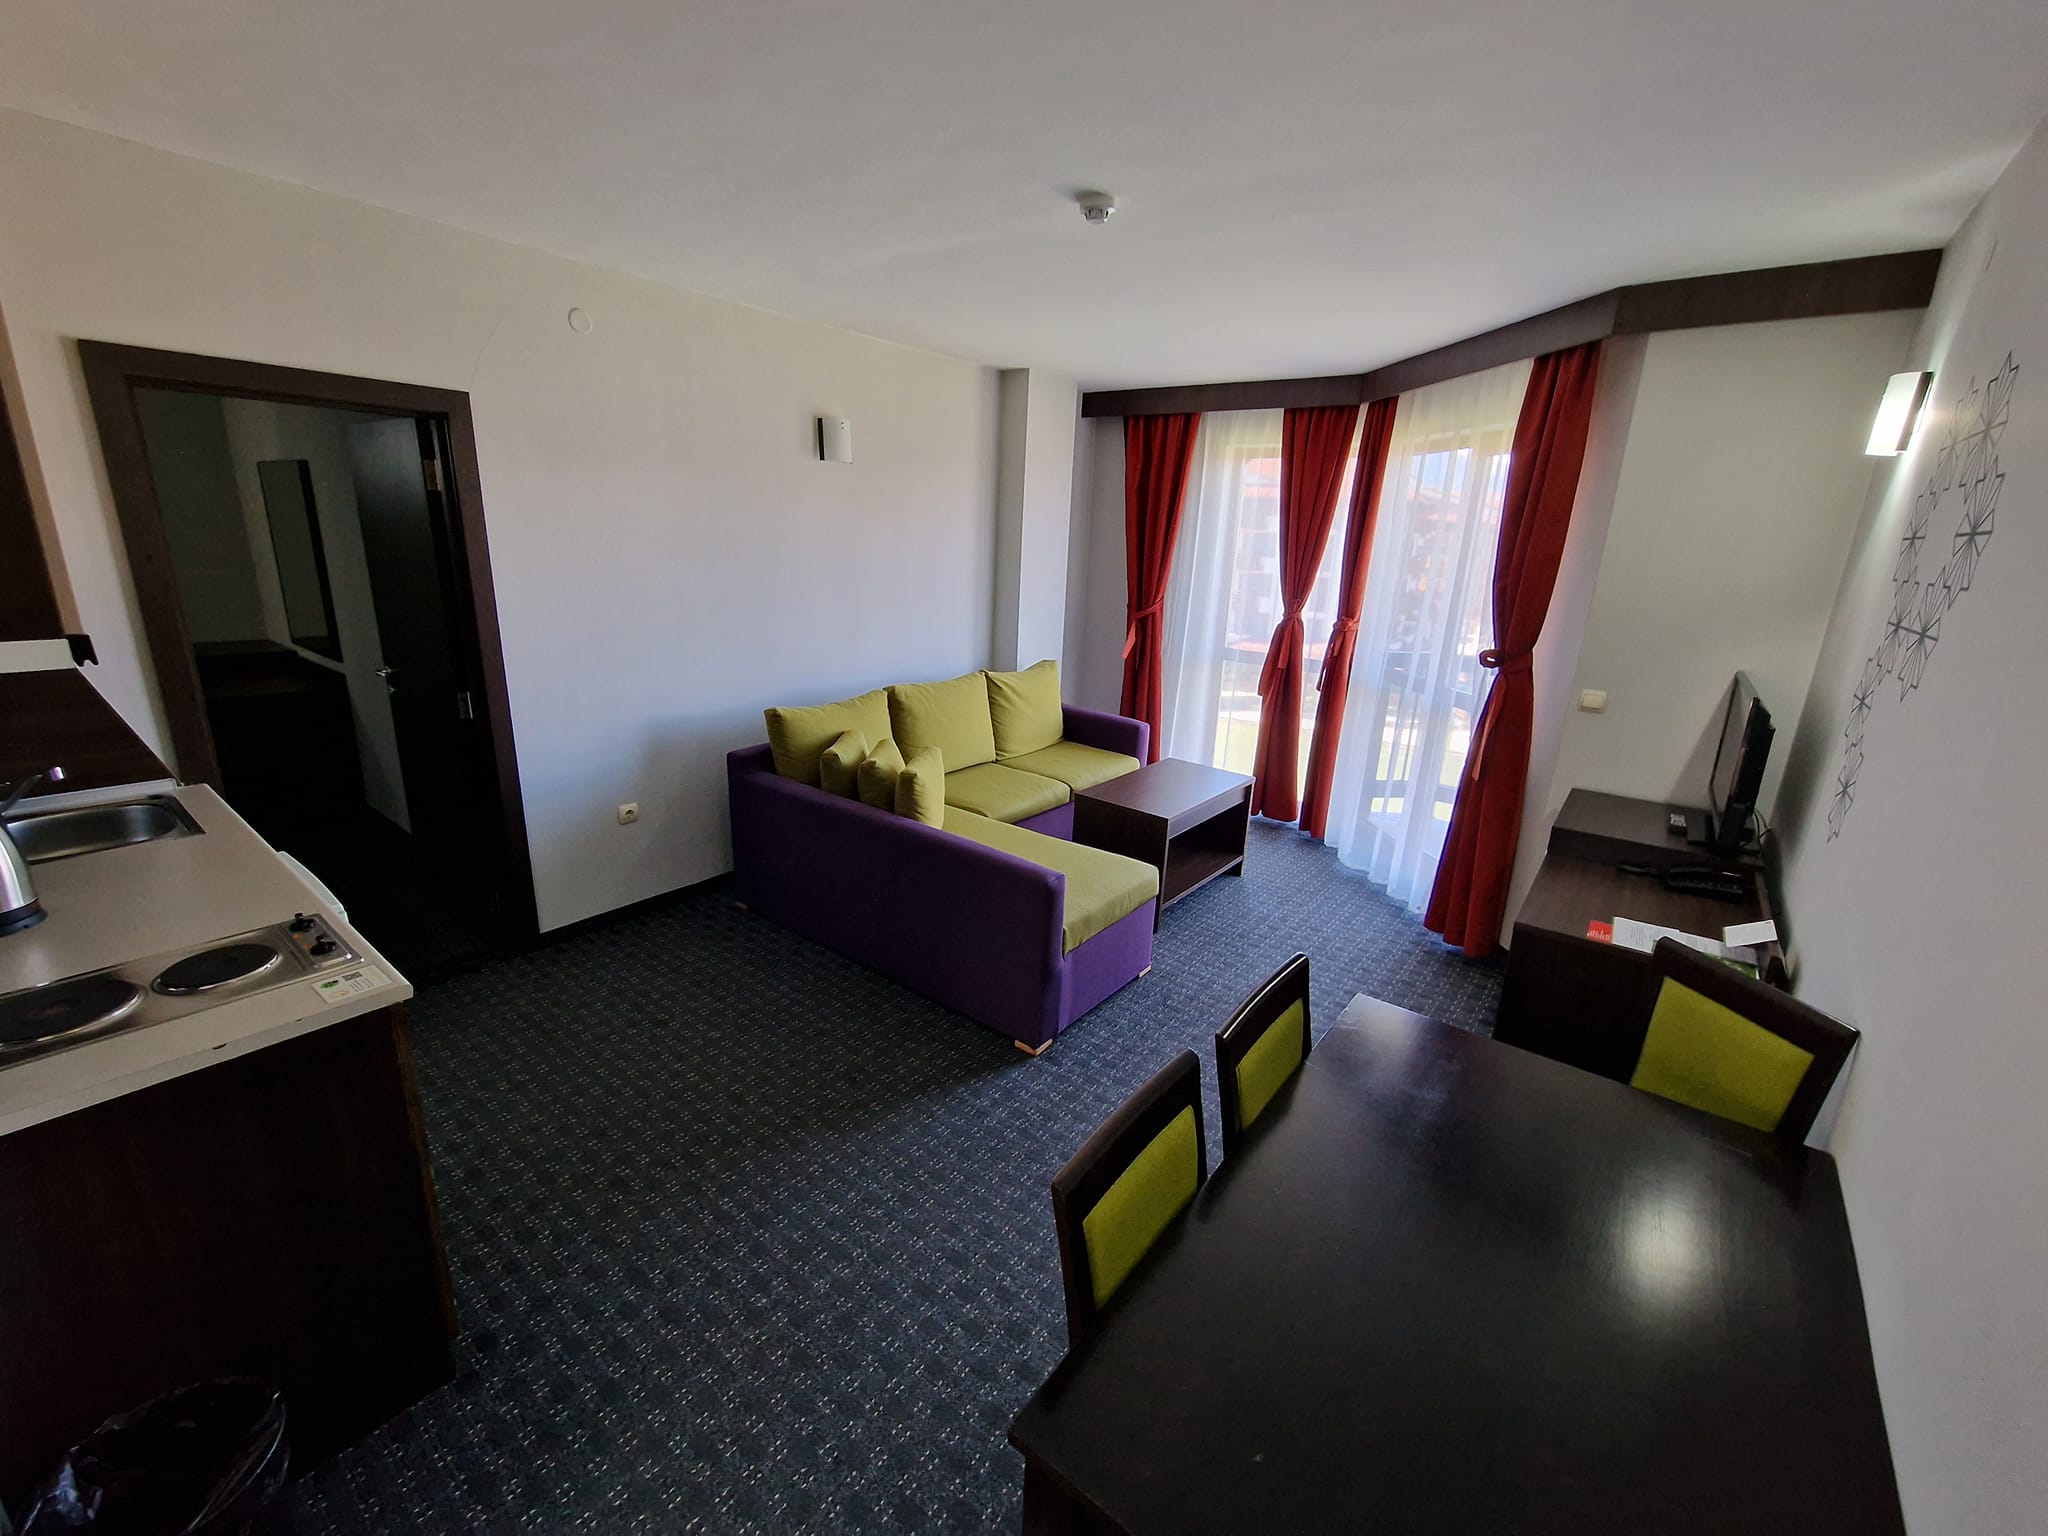 Двустаен апартамент в Банско до Хотел Belvedere, 200 метра от ски лифта